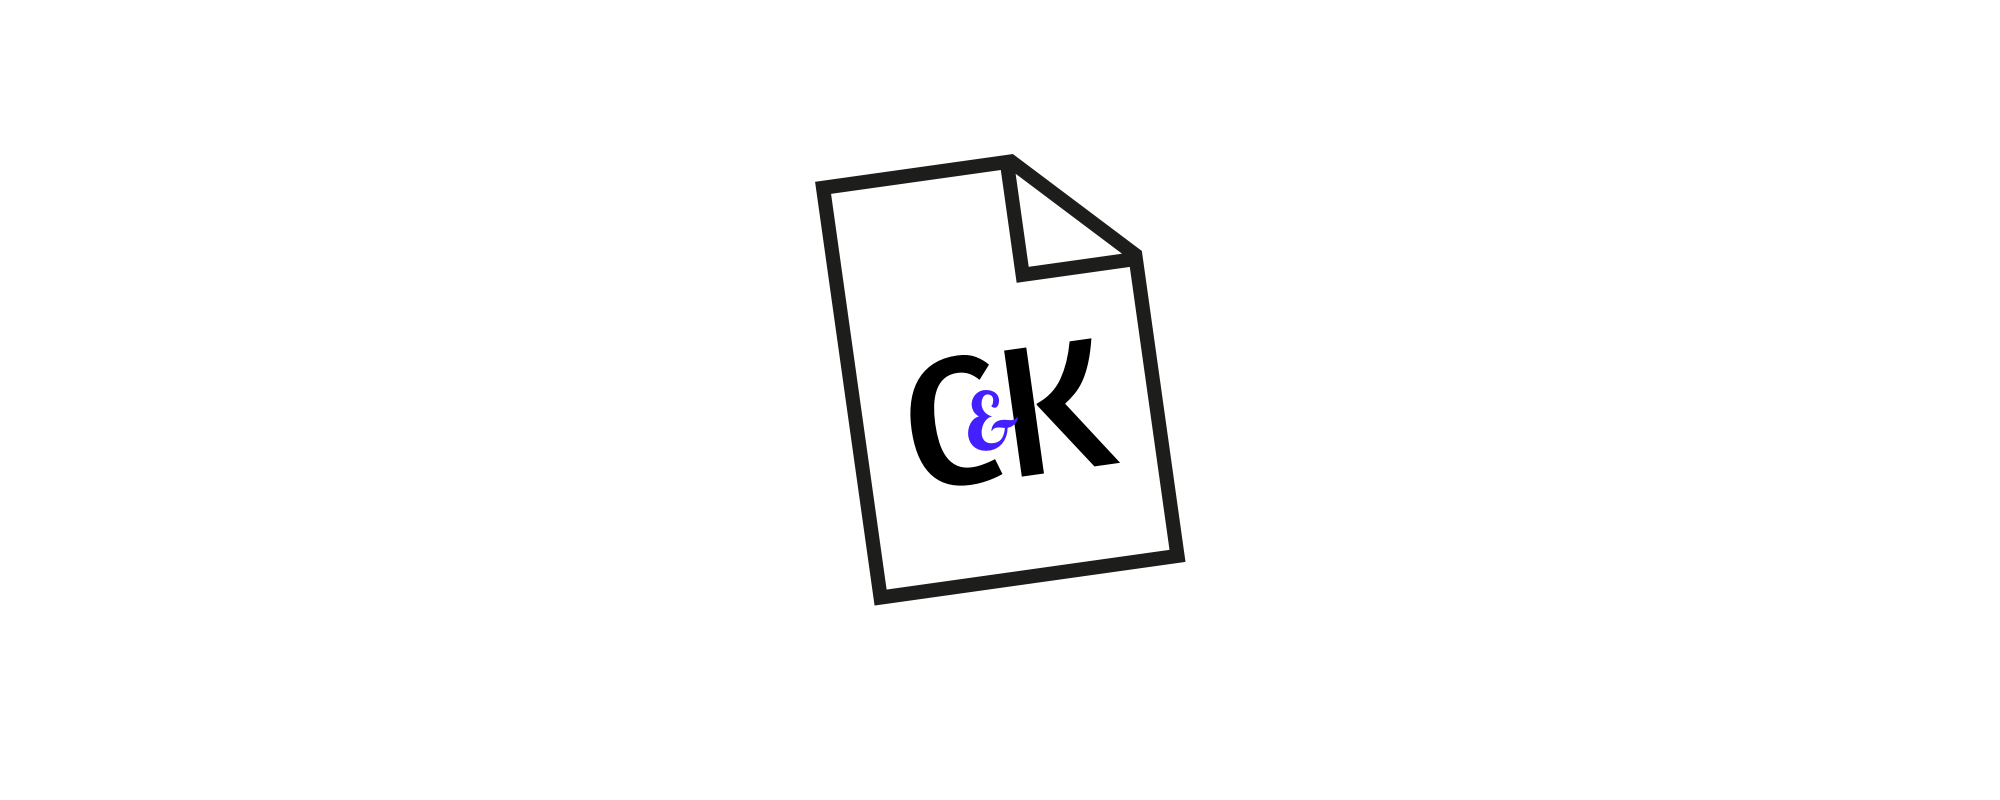 C&K_logo.png